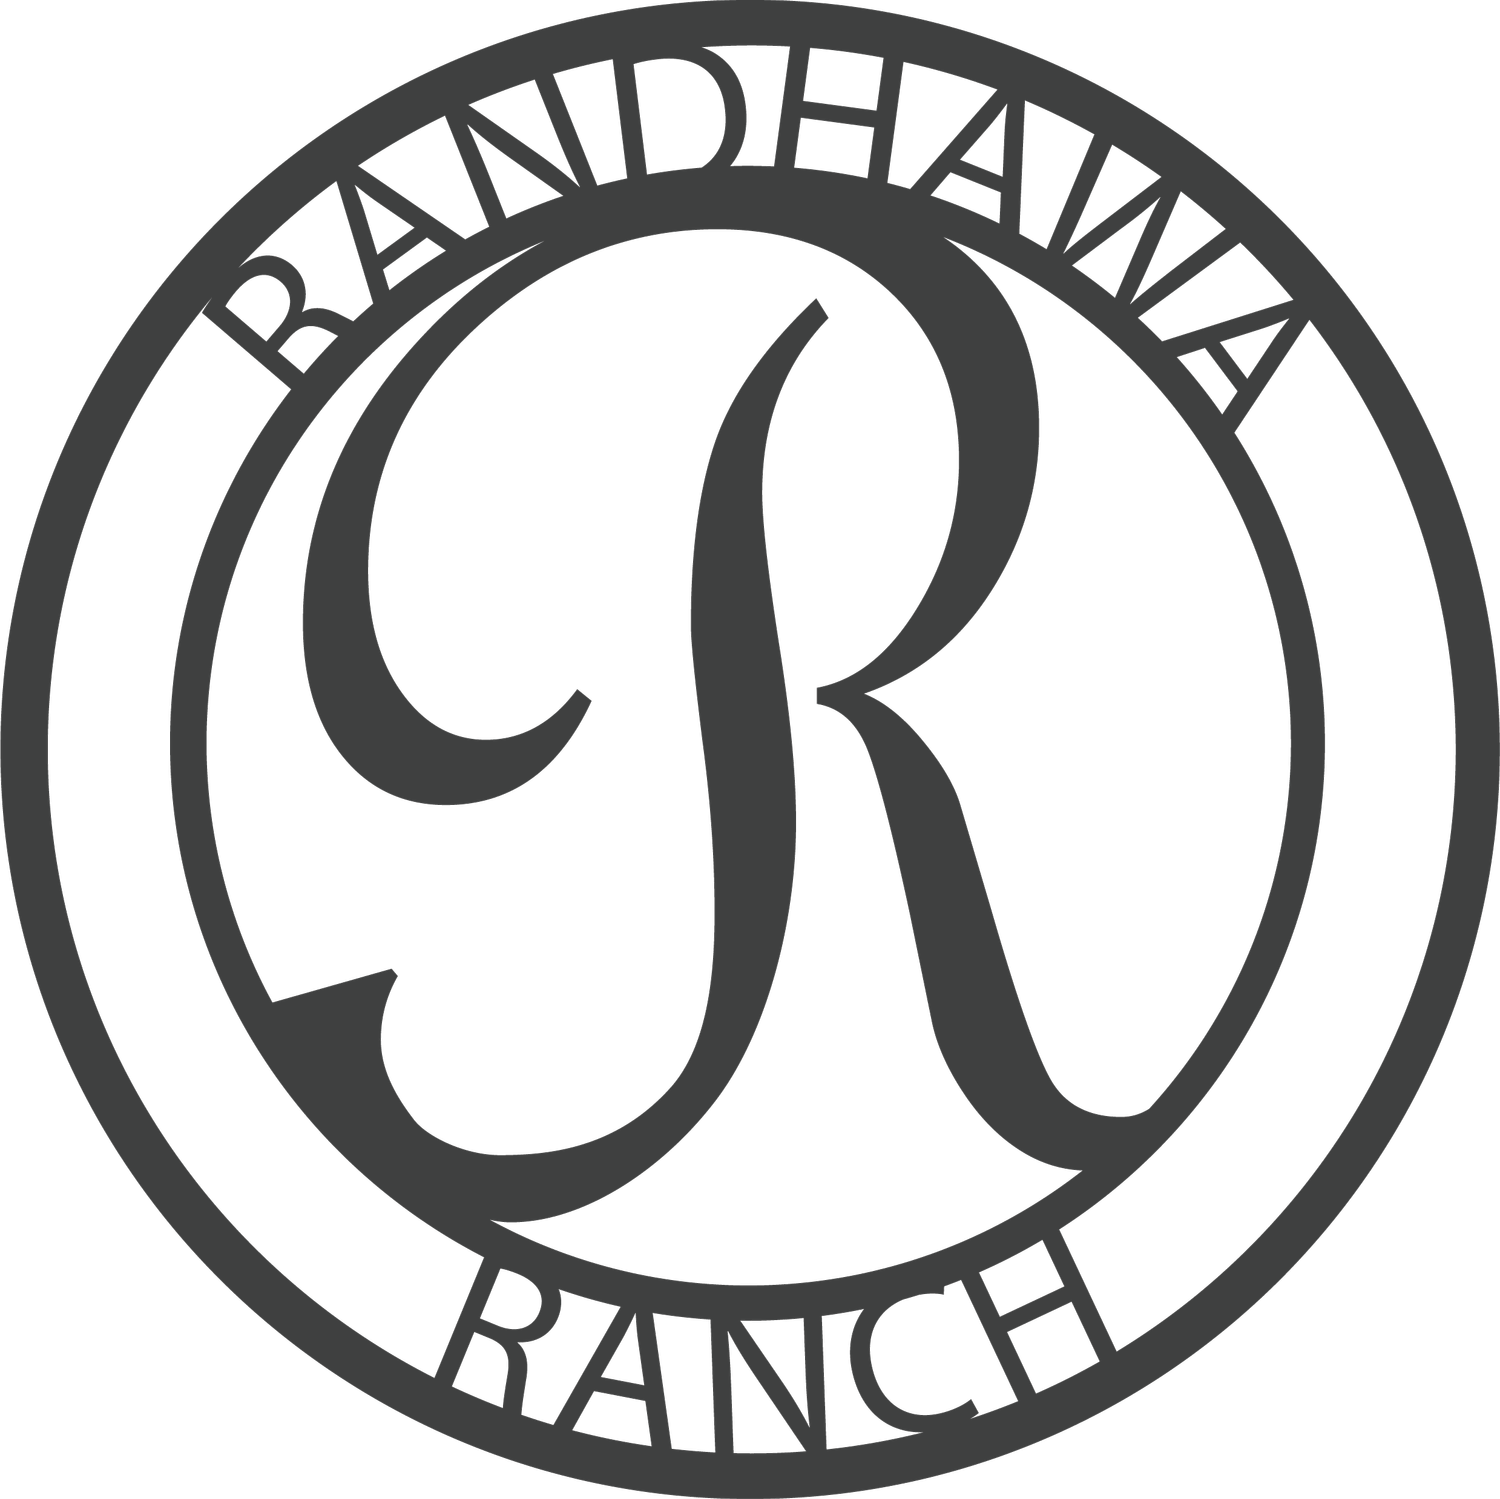 Randhawa Ranch